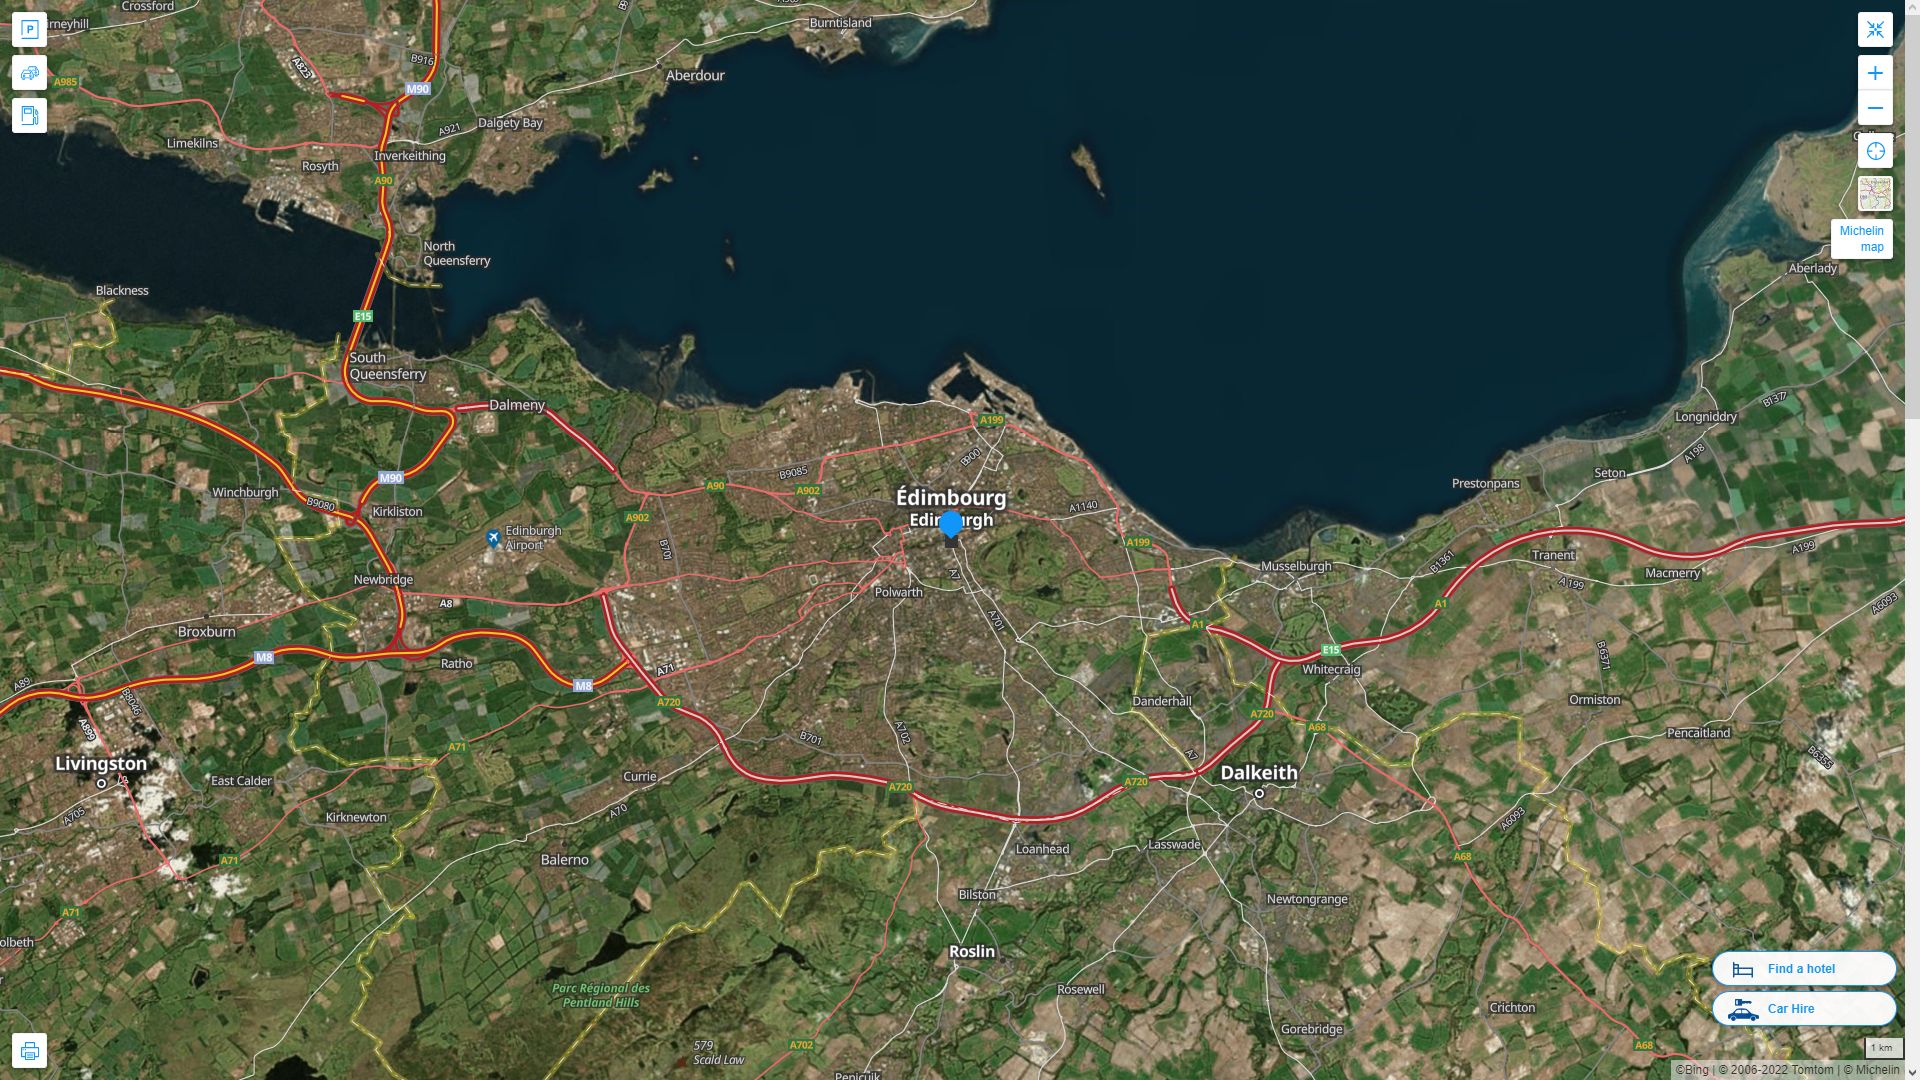 Edinburgh Royaume Uni Autoroute et carte routiere avec vue satellite